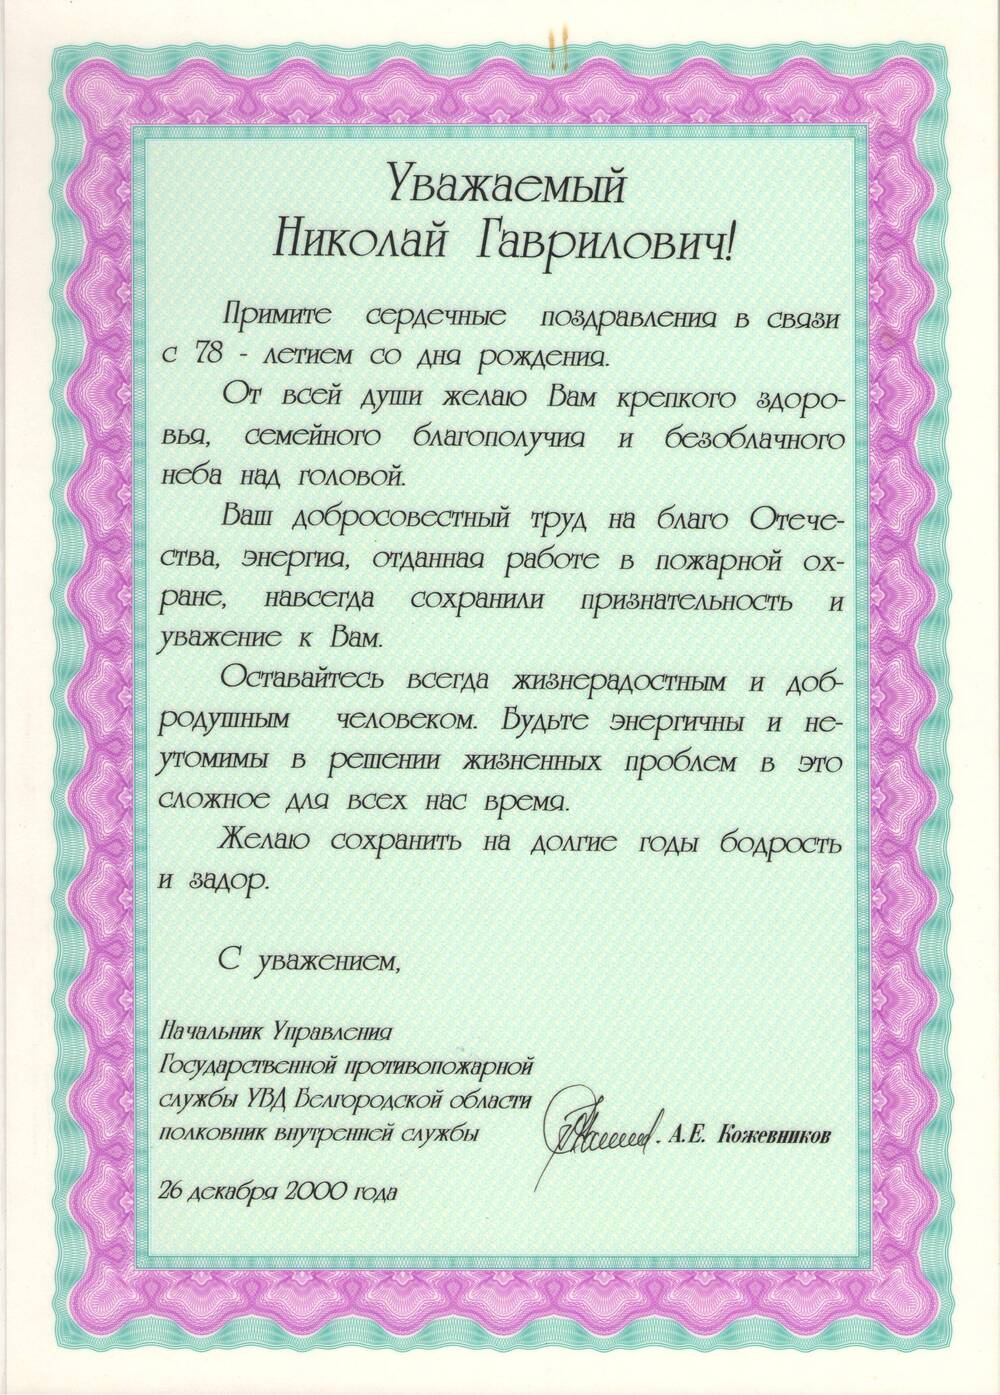 Адрес поздравительный Мочалину Николаю Гавриловичу в связи с 78-летием со дня рождения.